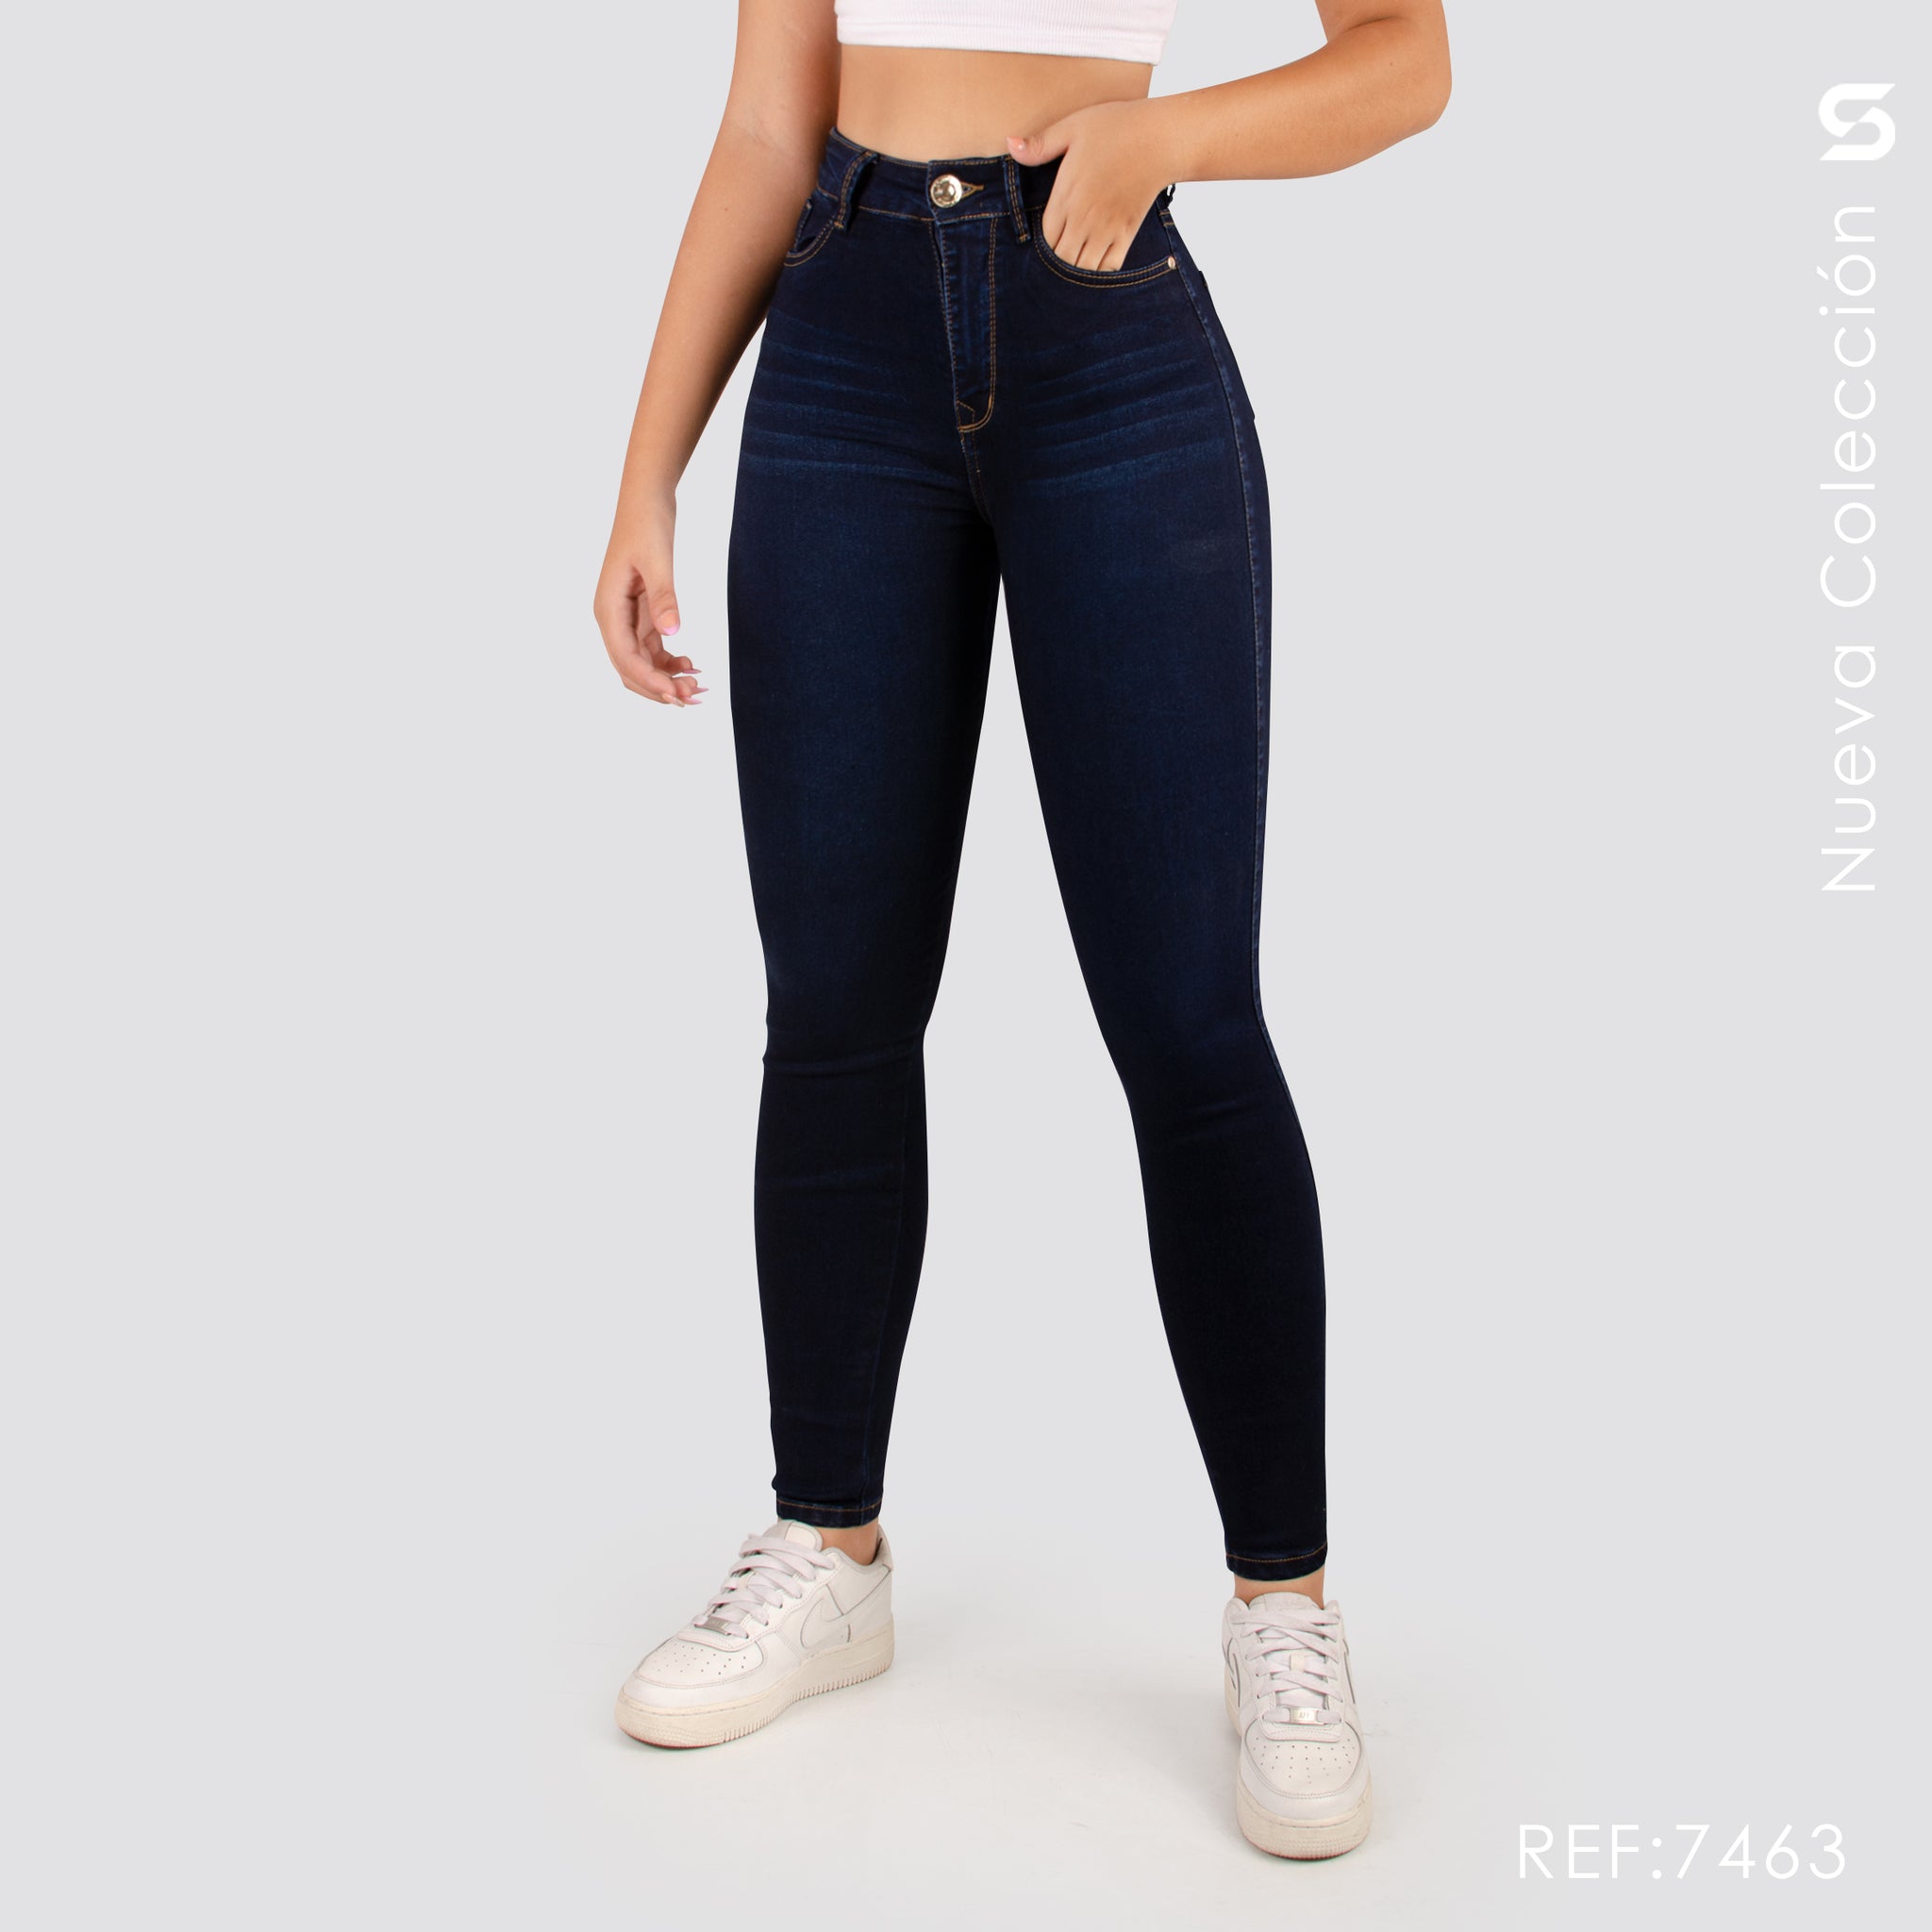 Jeans Skinny Tiro Alto S7463 – SOWER JNS